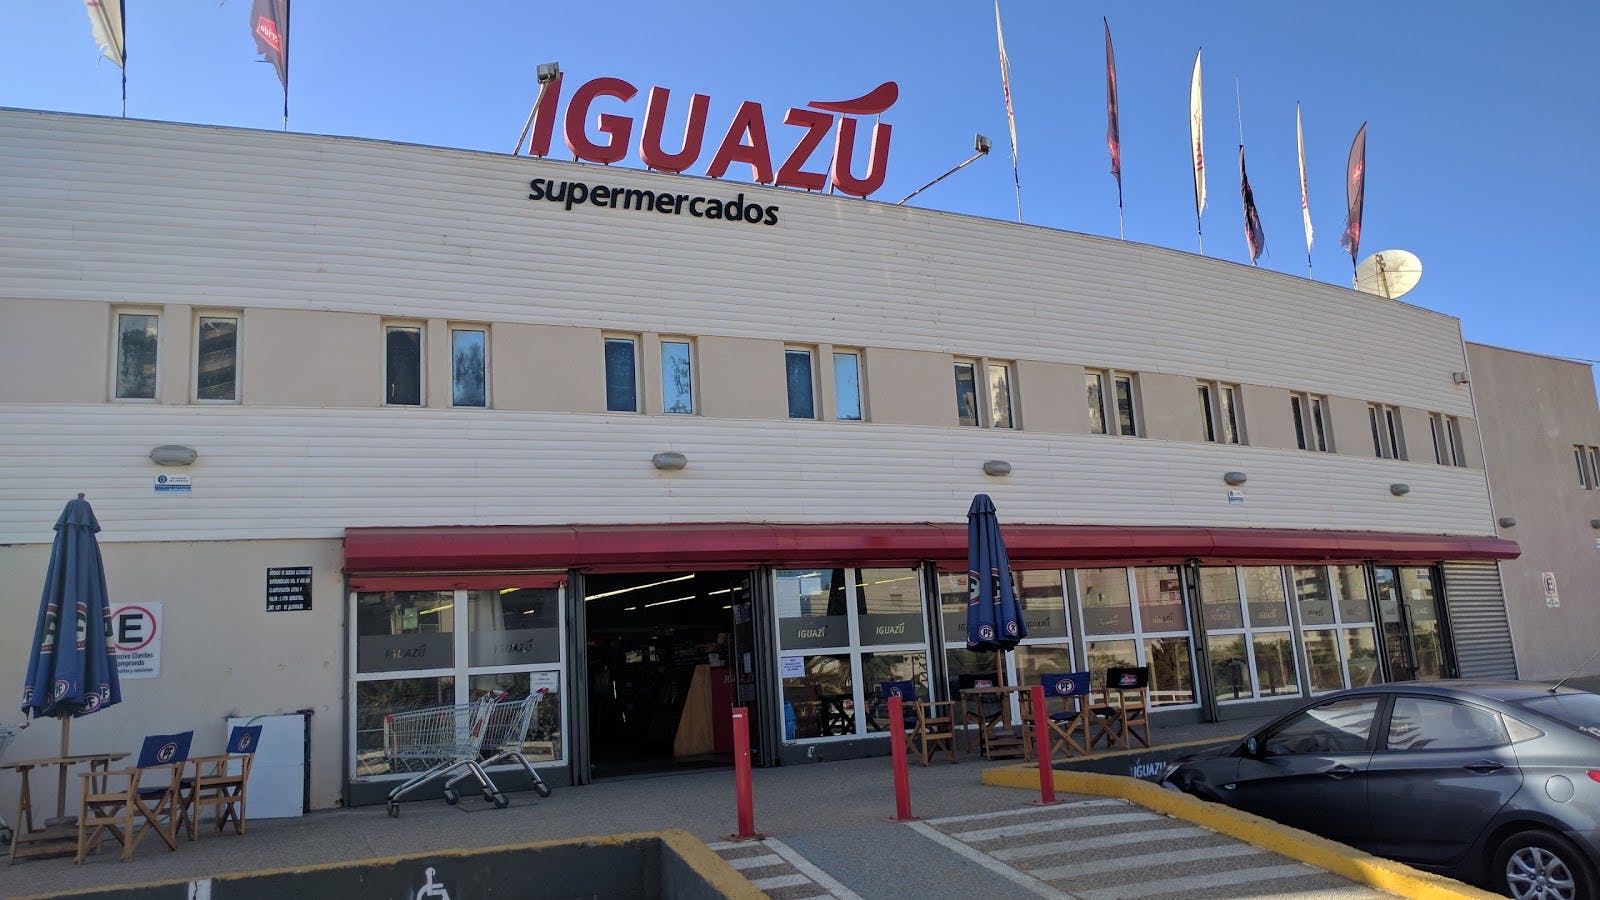 Image - Supermercados Iguazu